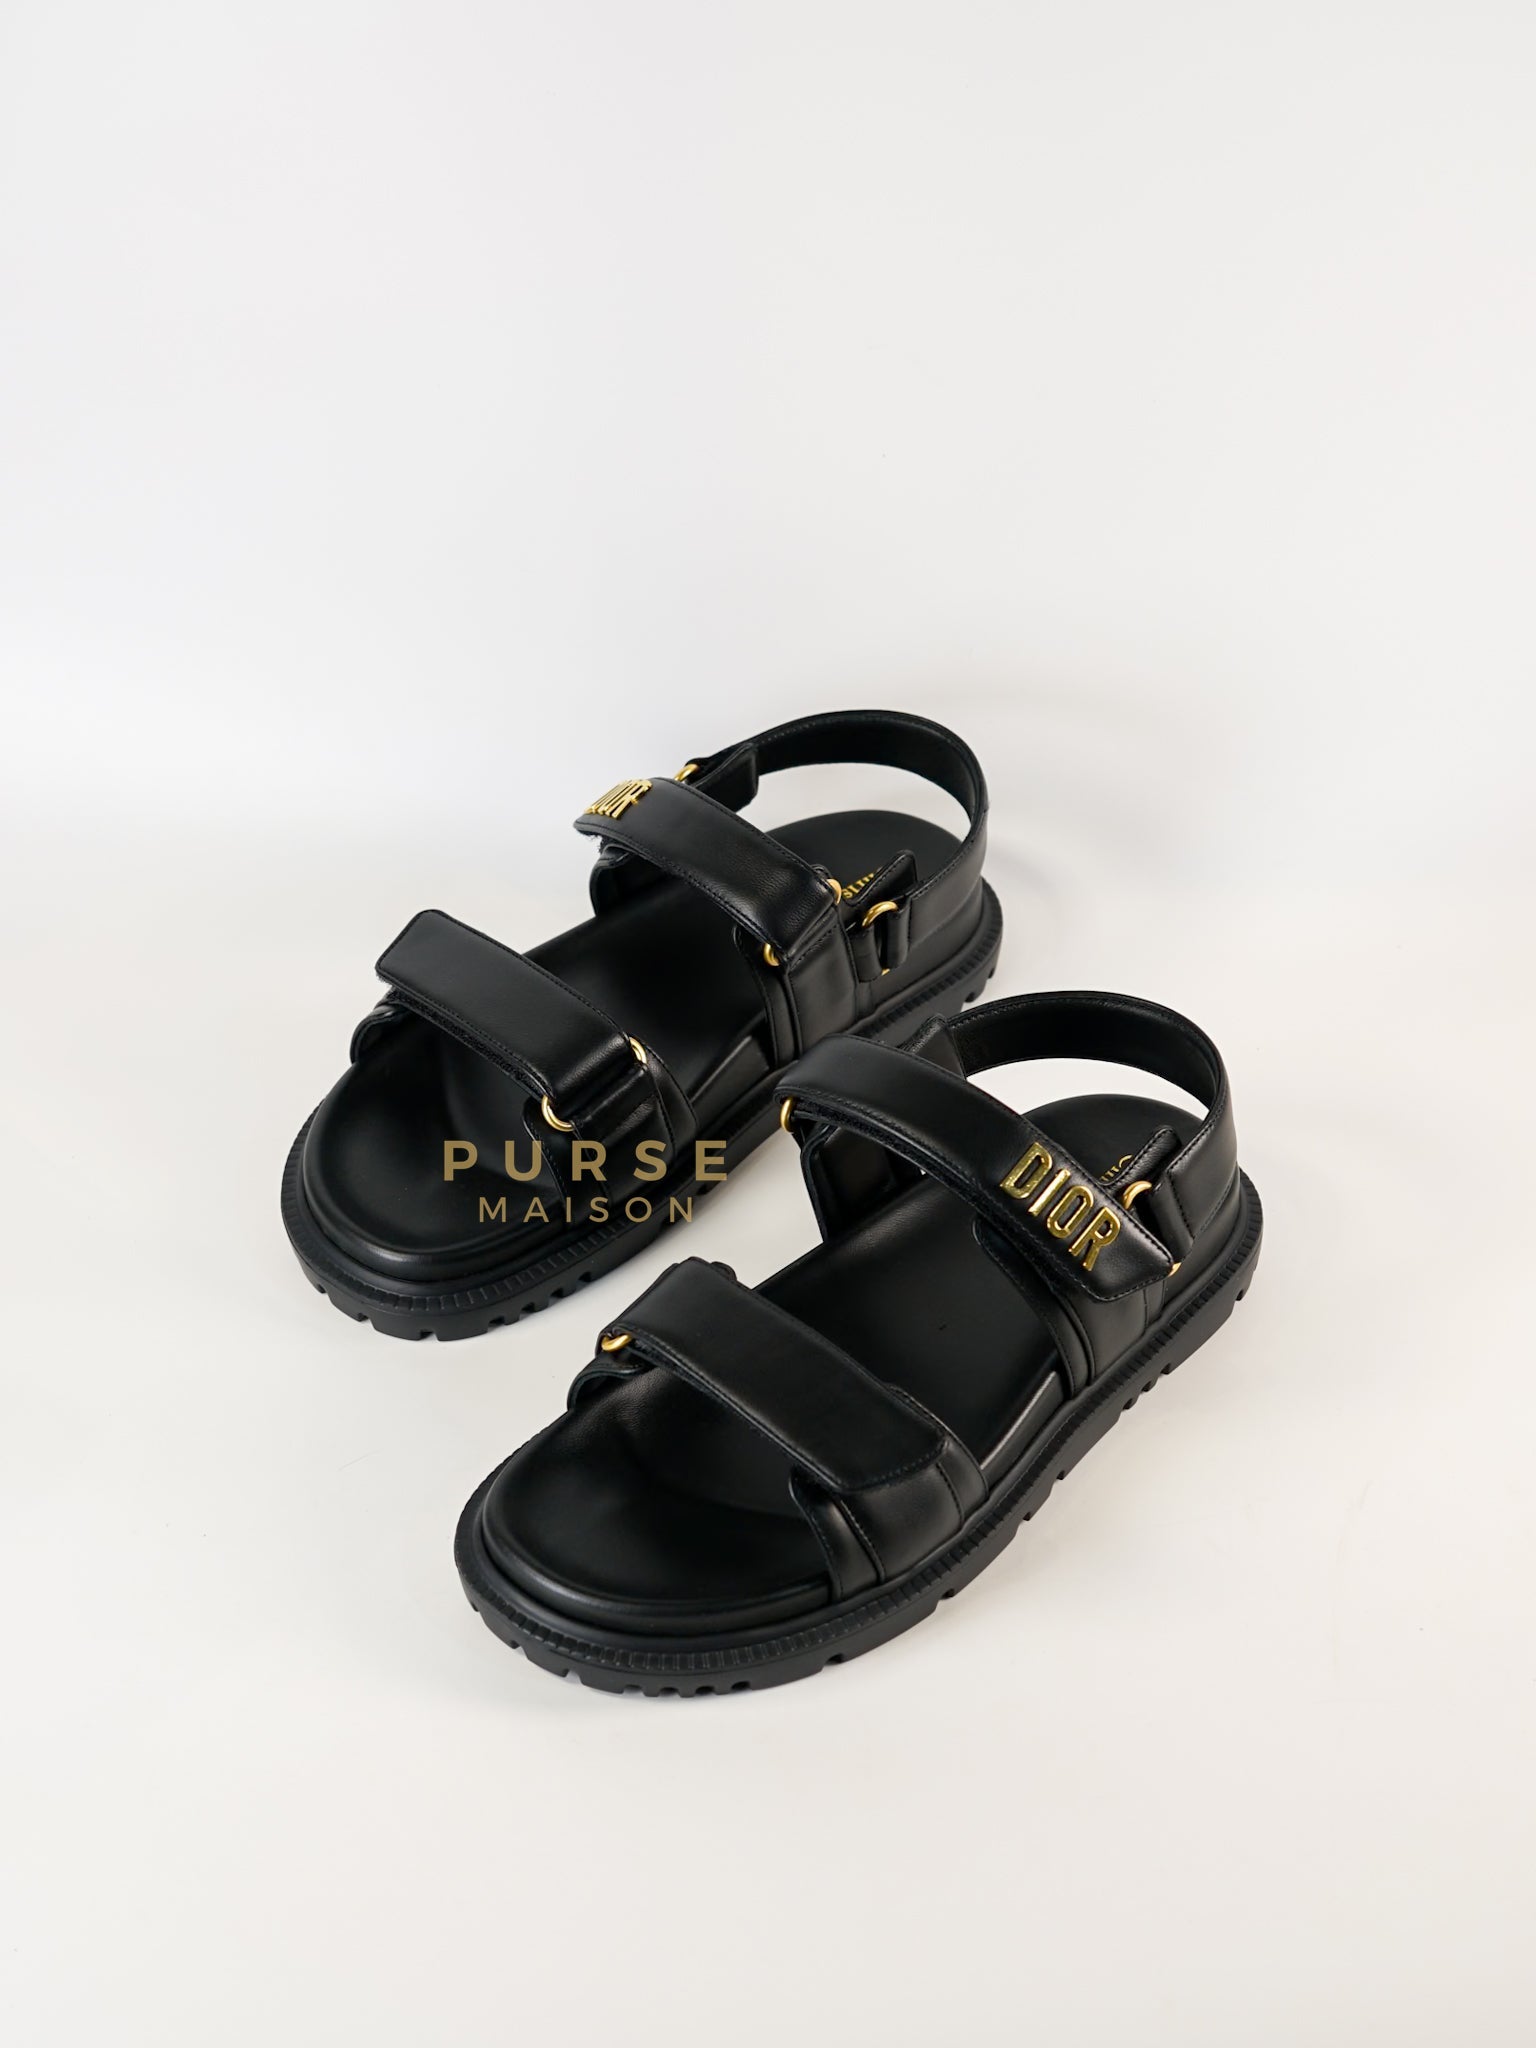 Dioract Black Lambskin Women’s Sandals Size 39 (25.5cm) | Purse Maison Luxury Bags Shop